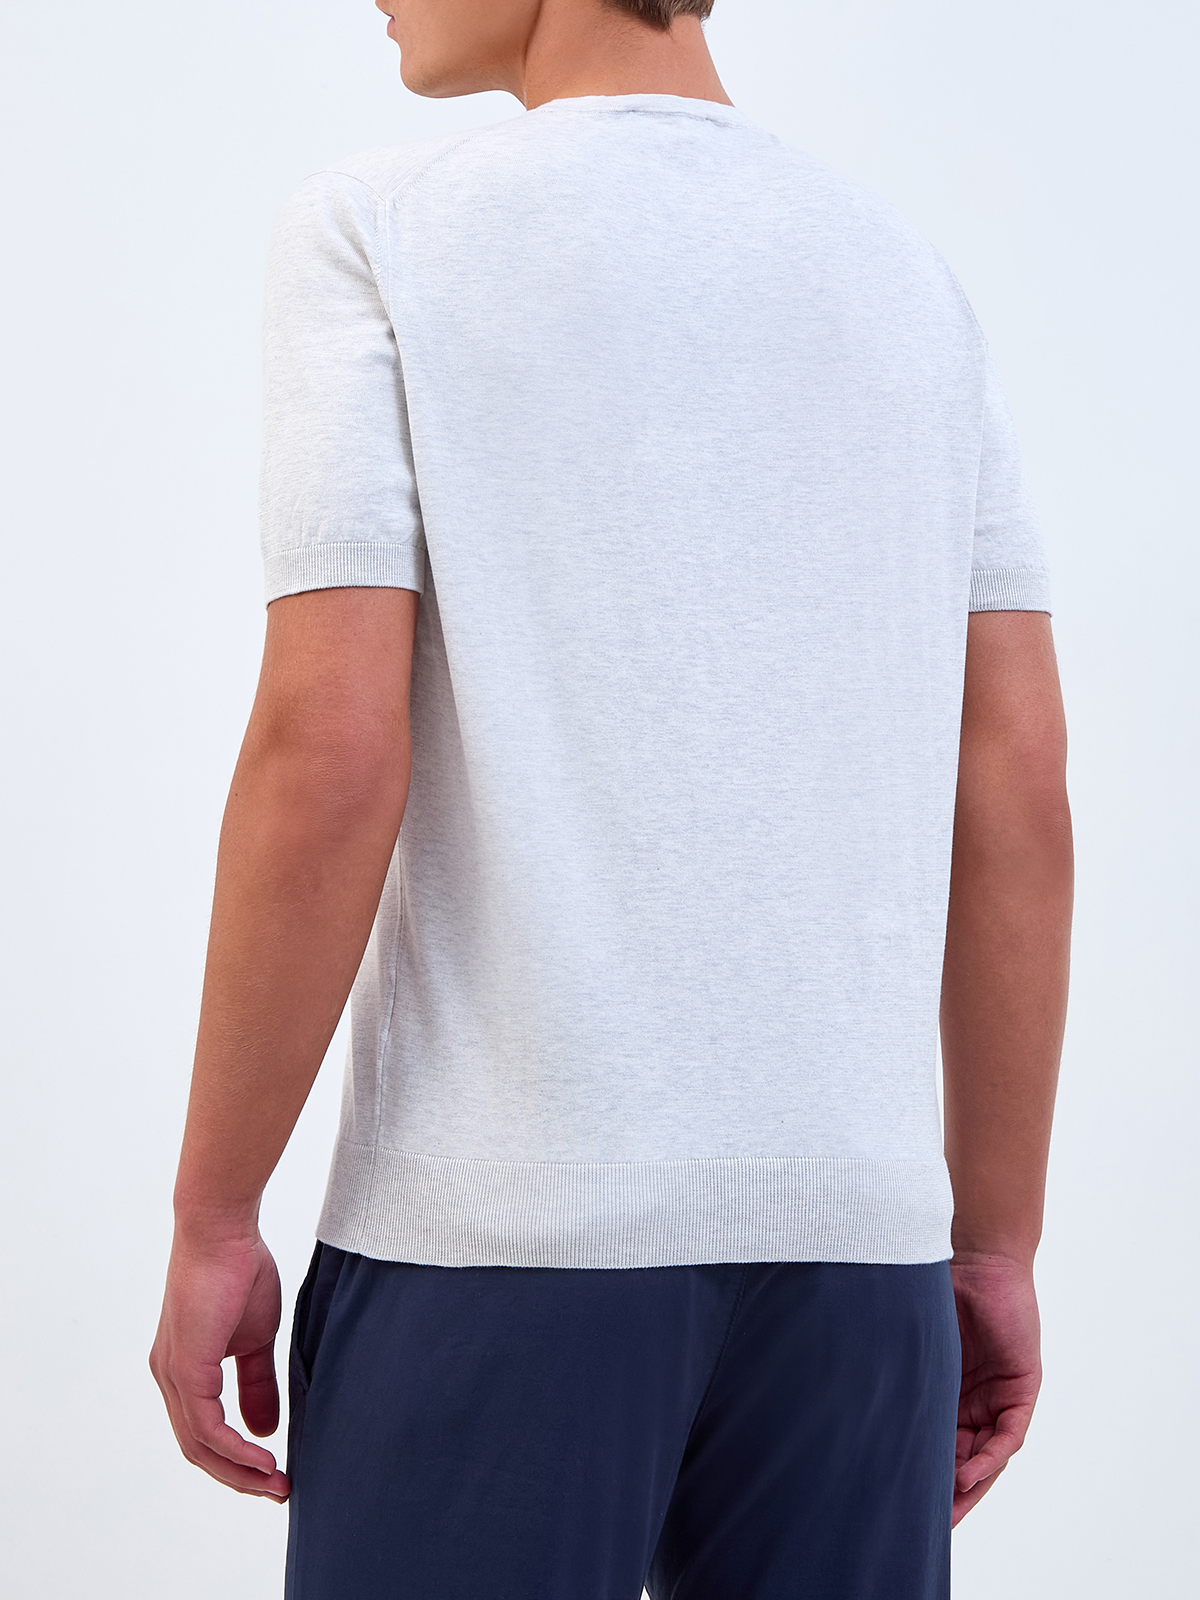 Джемпер с короткими рукавами из тонкой хлопковой пряжи GRAN SASSO, цвет белый, размер 50;52;54;56;58 - фото 4